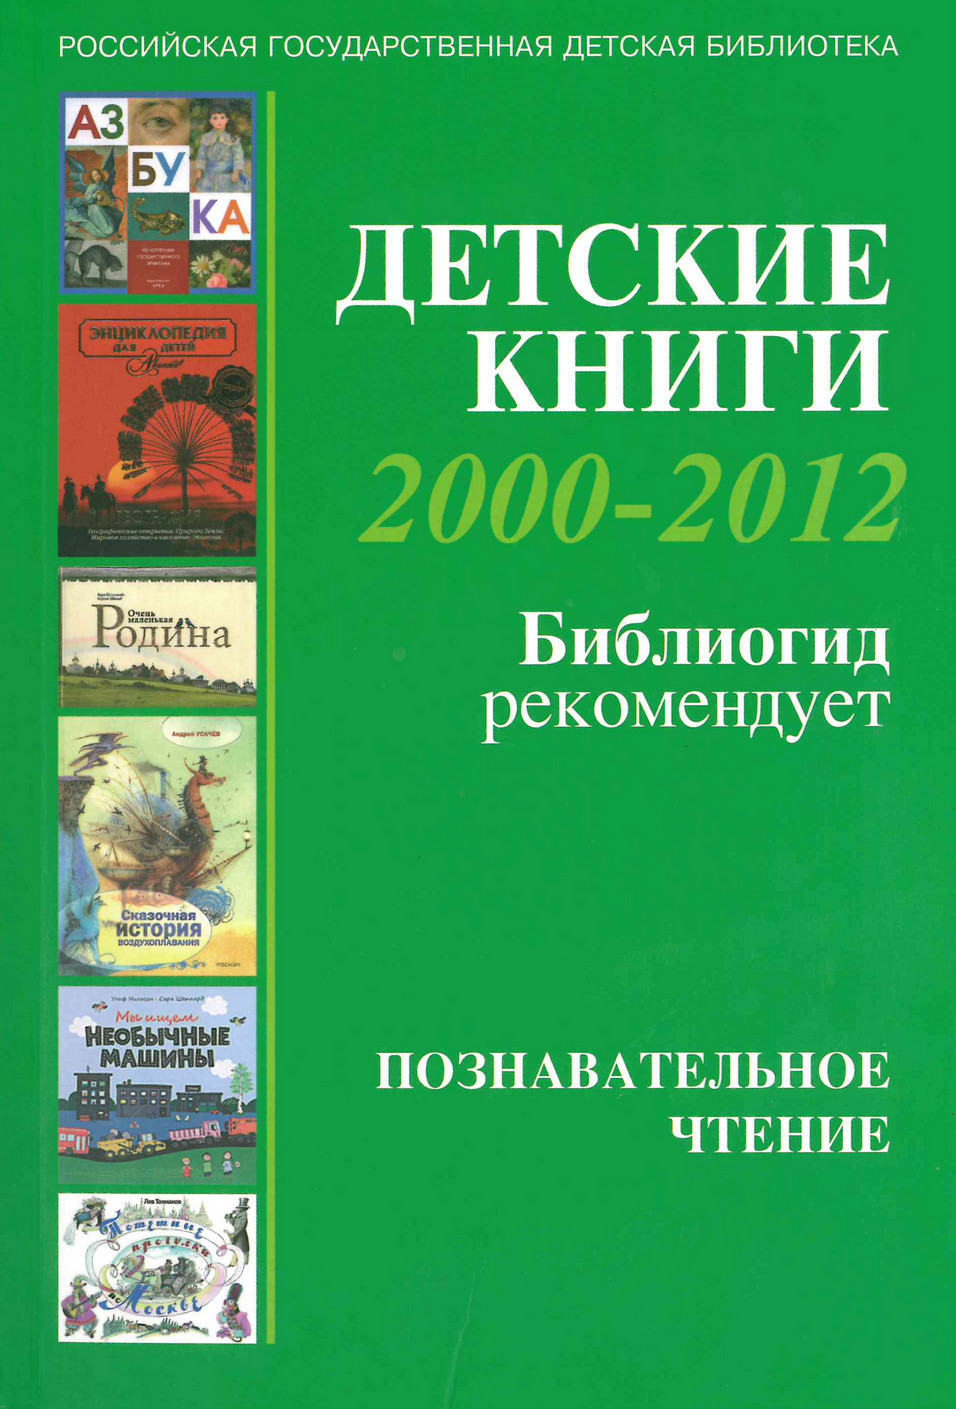  Детские книги 2000-2012: Библиогид рекомендует: [4] Познавательное чтение